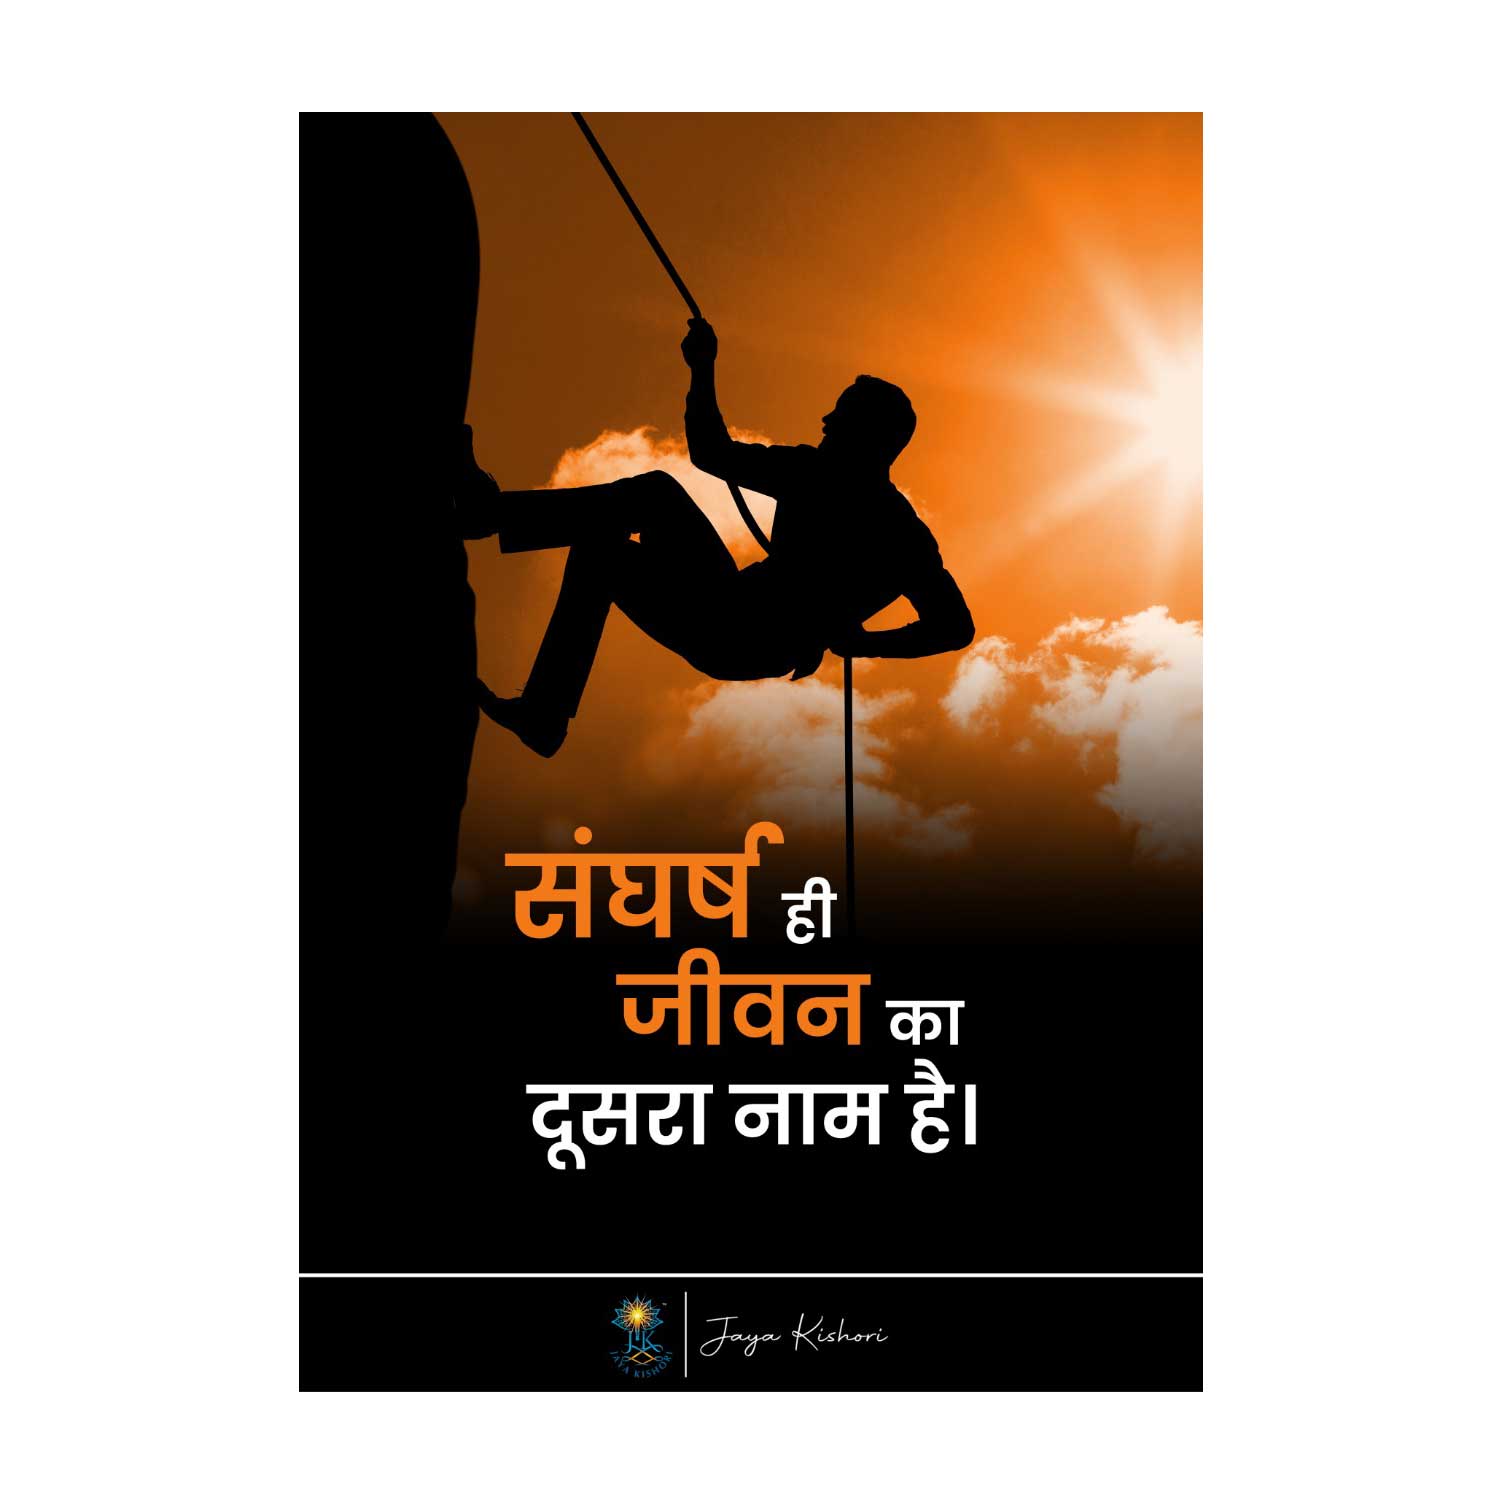 Sangharsh - Poster Print